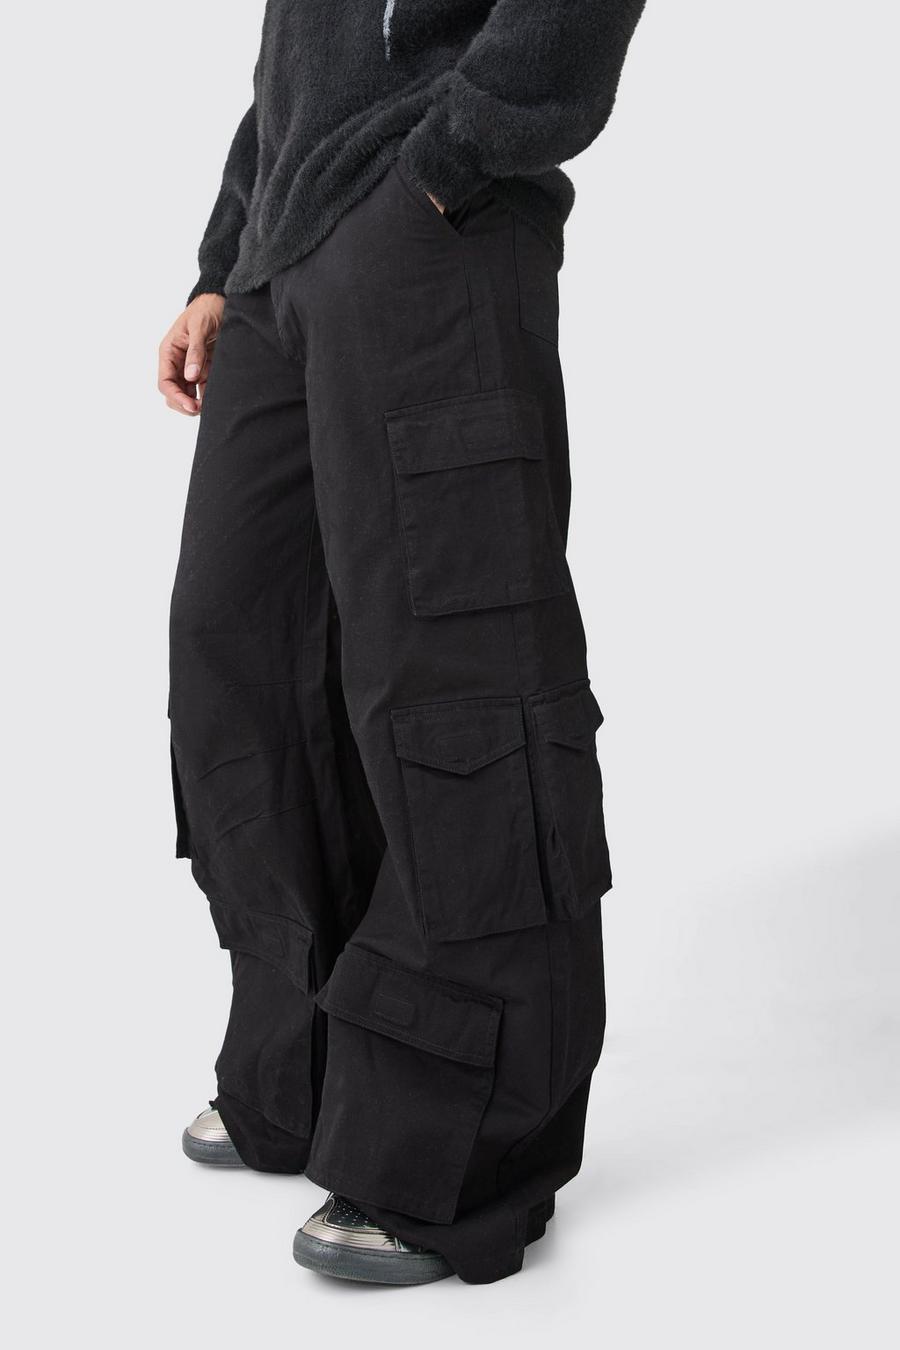 Pantaloni super comodi in denim rigido con tasche Cargo multiple, Black